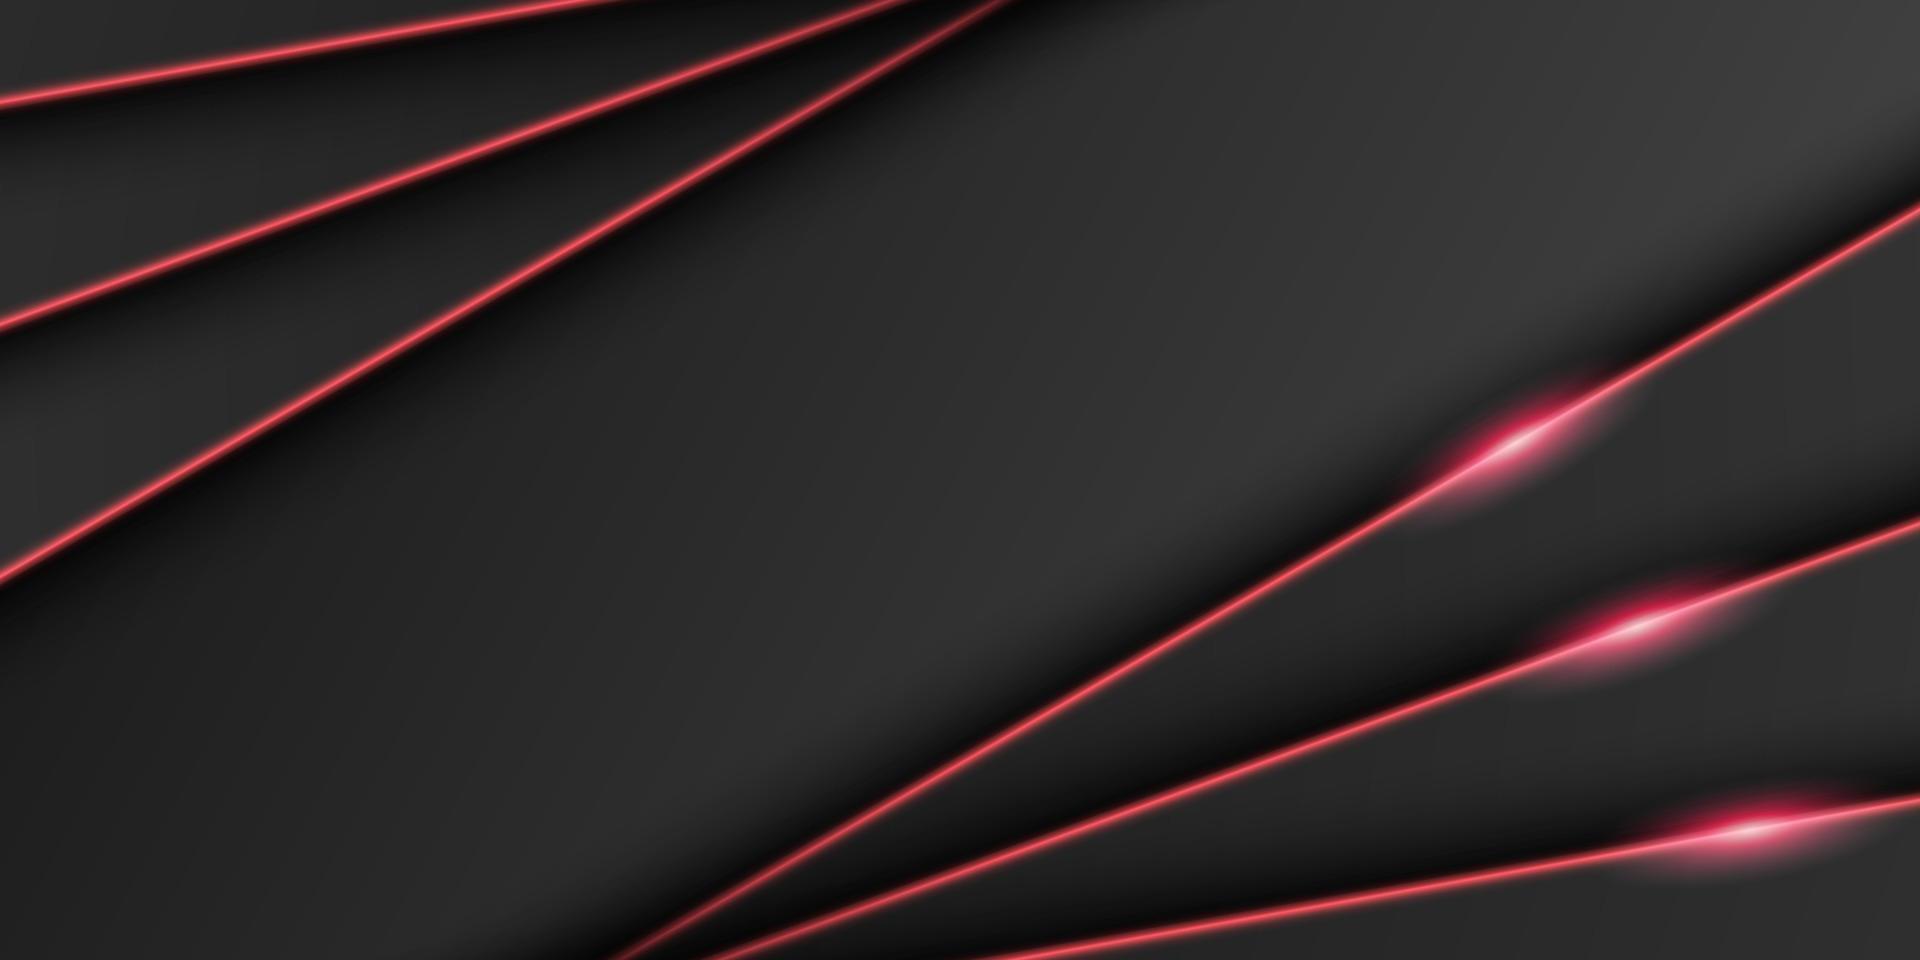 abstracte metalen zwarte frame achtergrond, driehoekige overlap laag met fel rood licht lijn, diagonale vorm, donkere minimaal ontwerp met kopie ruimte, vectorillustratie vector